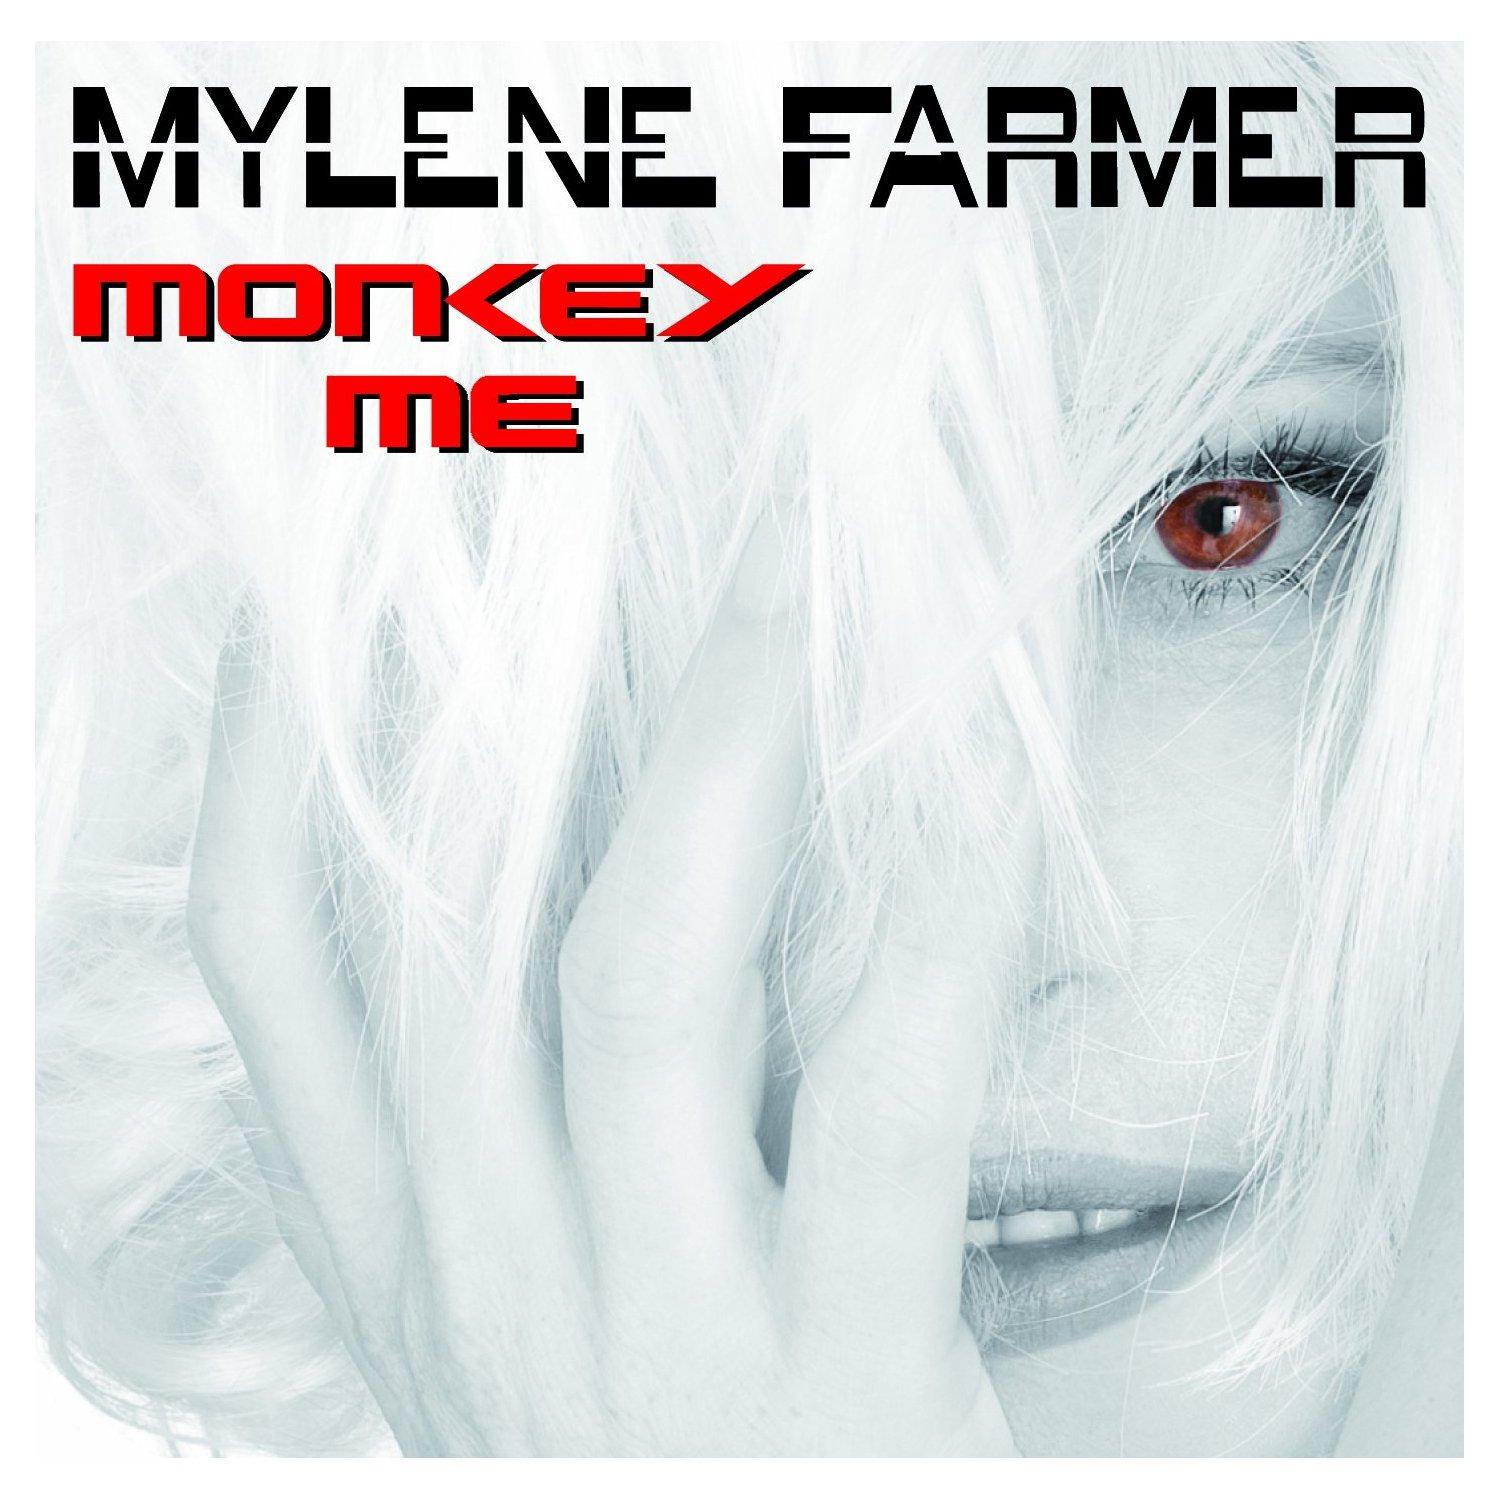 La tracklist du nouvel album de Mylène Farmer se dévoile